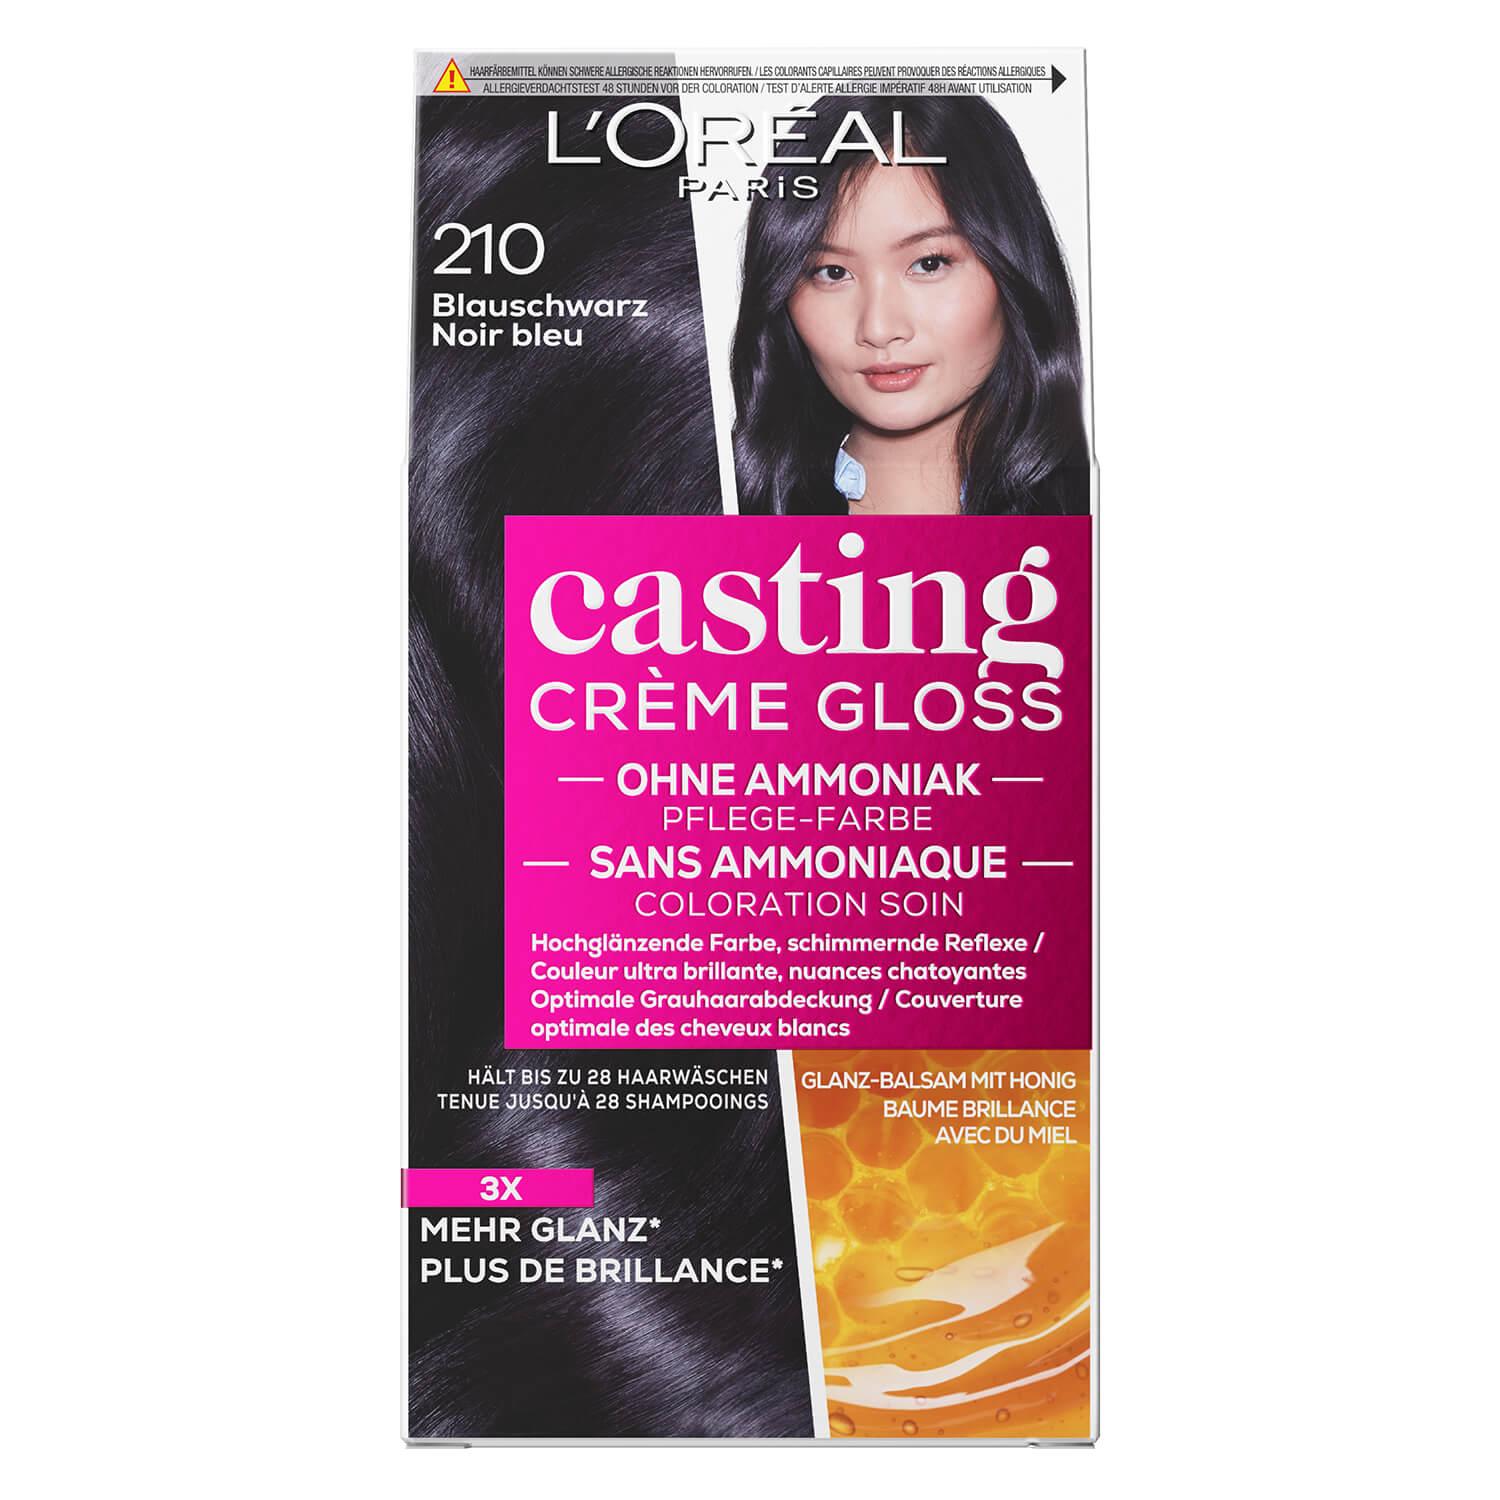 LOréal Casting - Crème Gloss 210 Blauschwarz